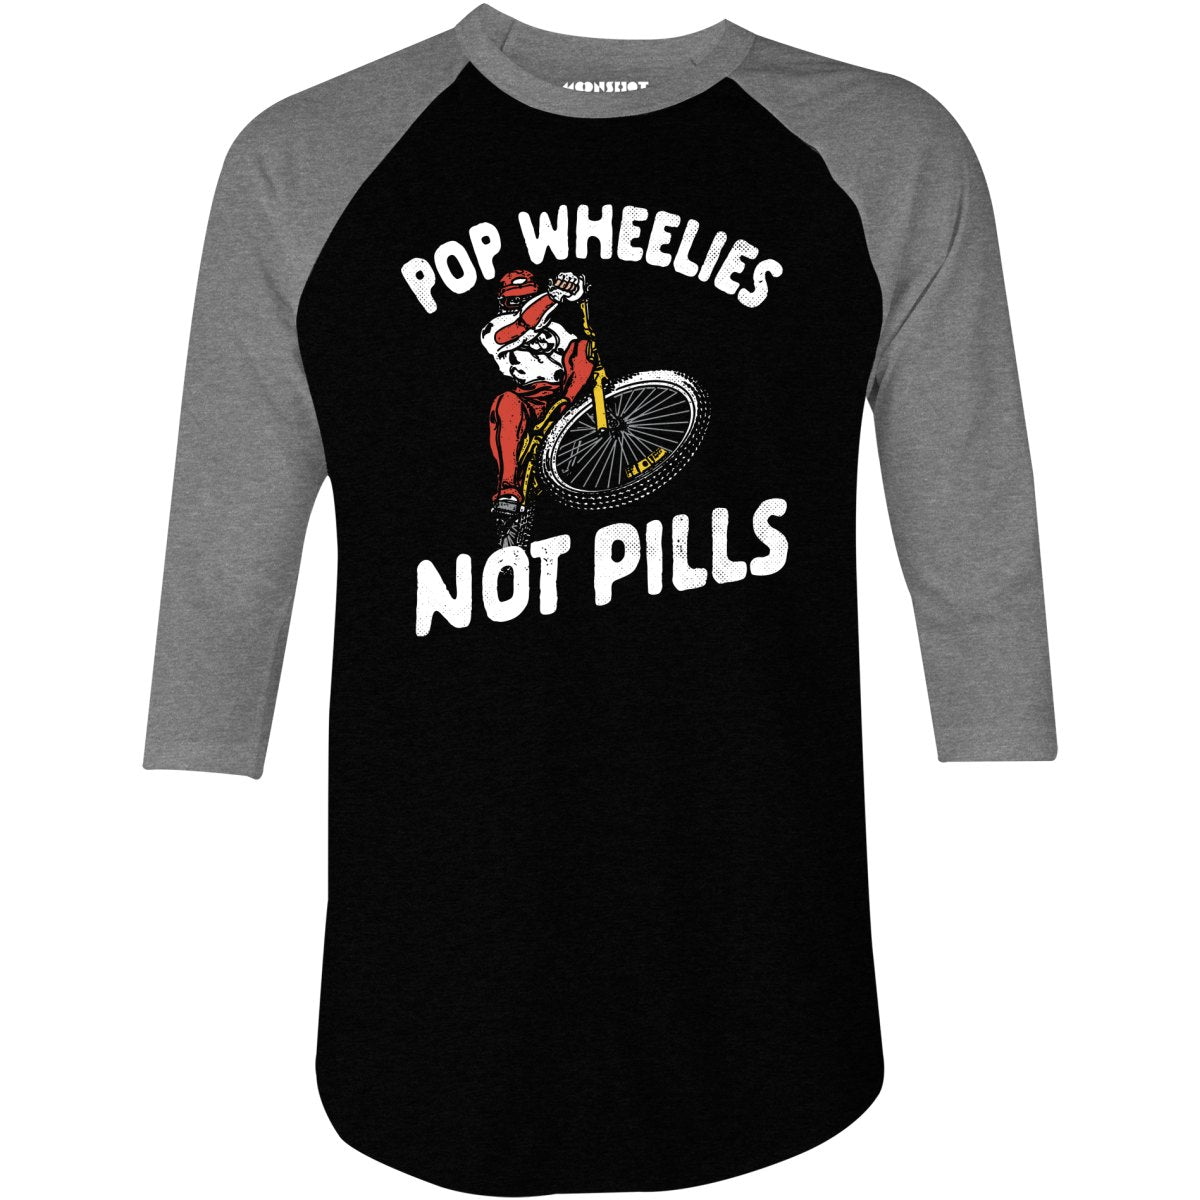 Pop Wheelies Not Pills - 3/4 Sleeve Raglan T-Shirt